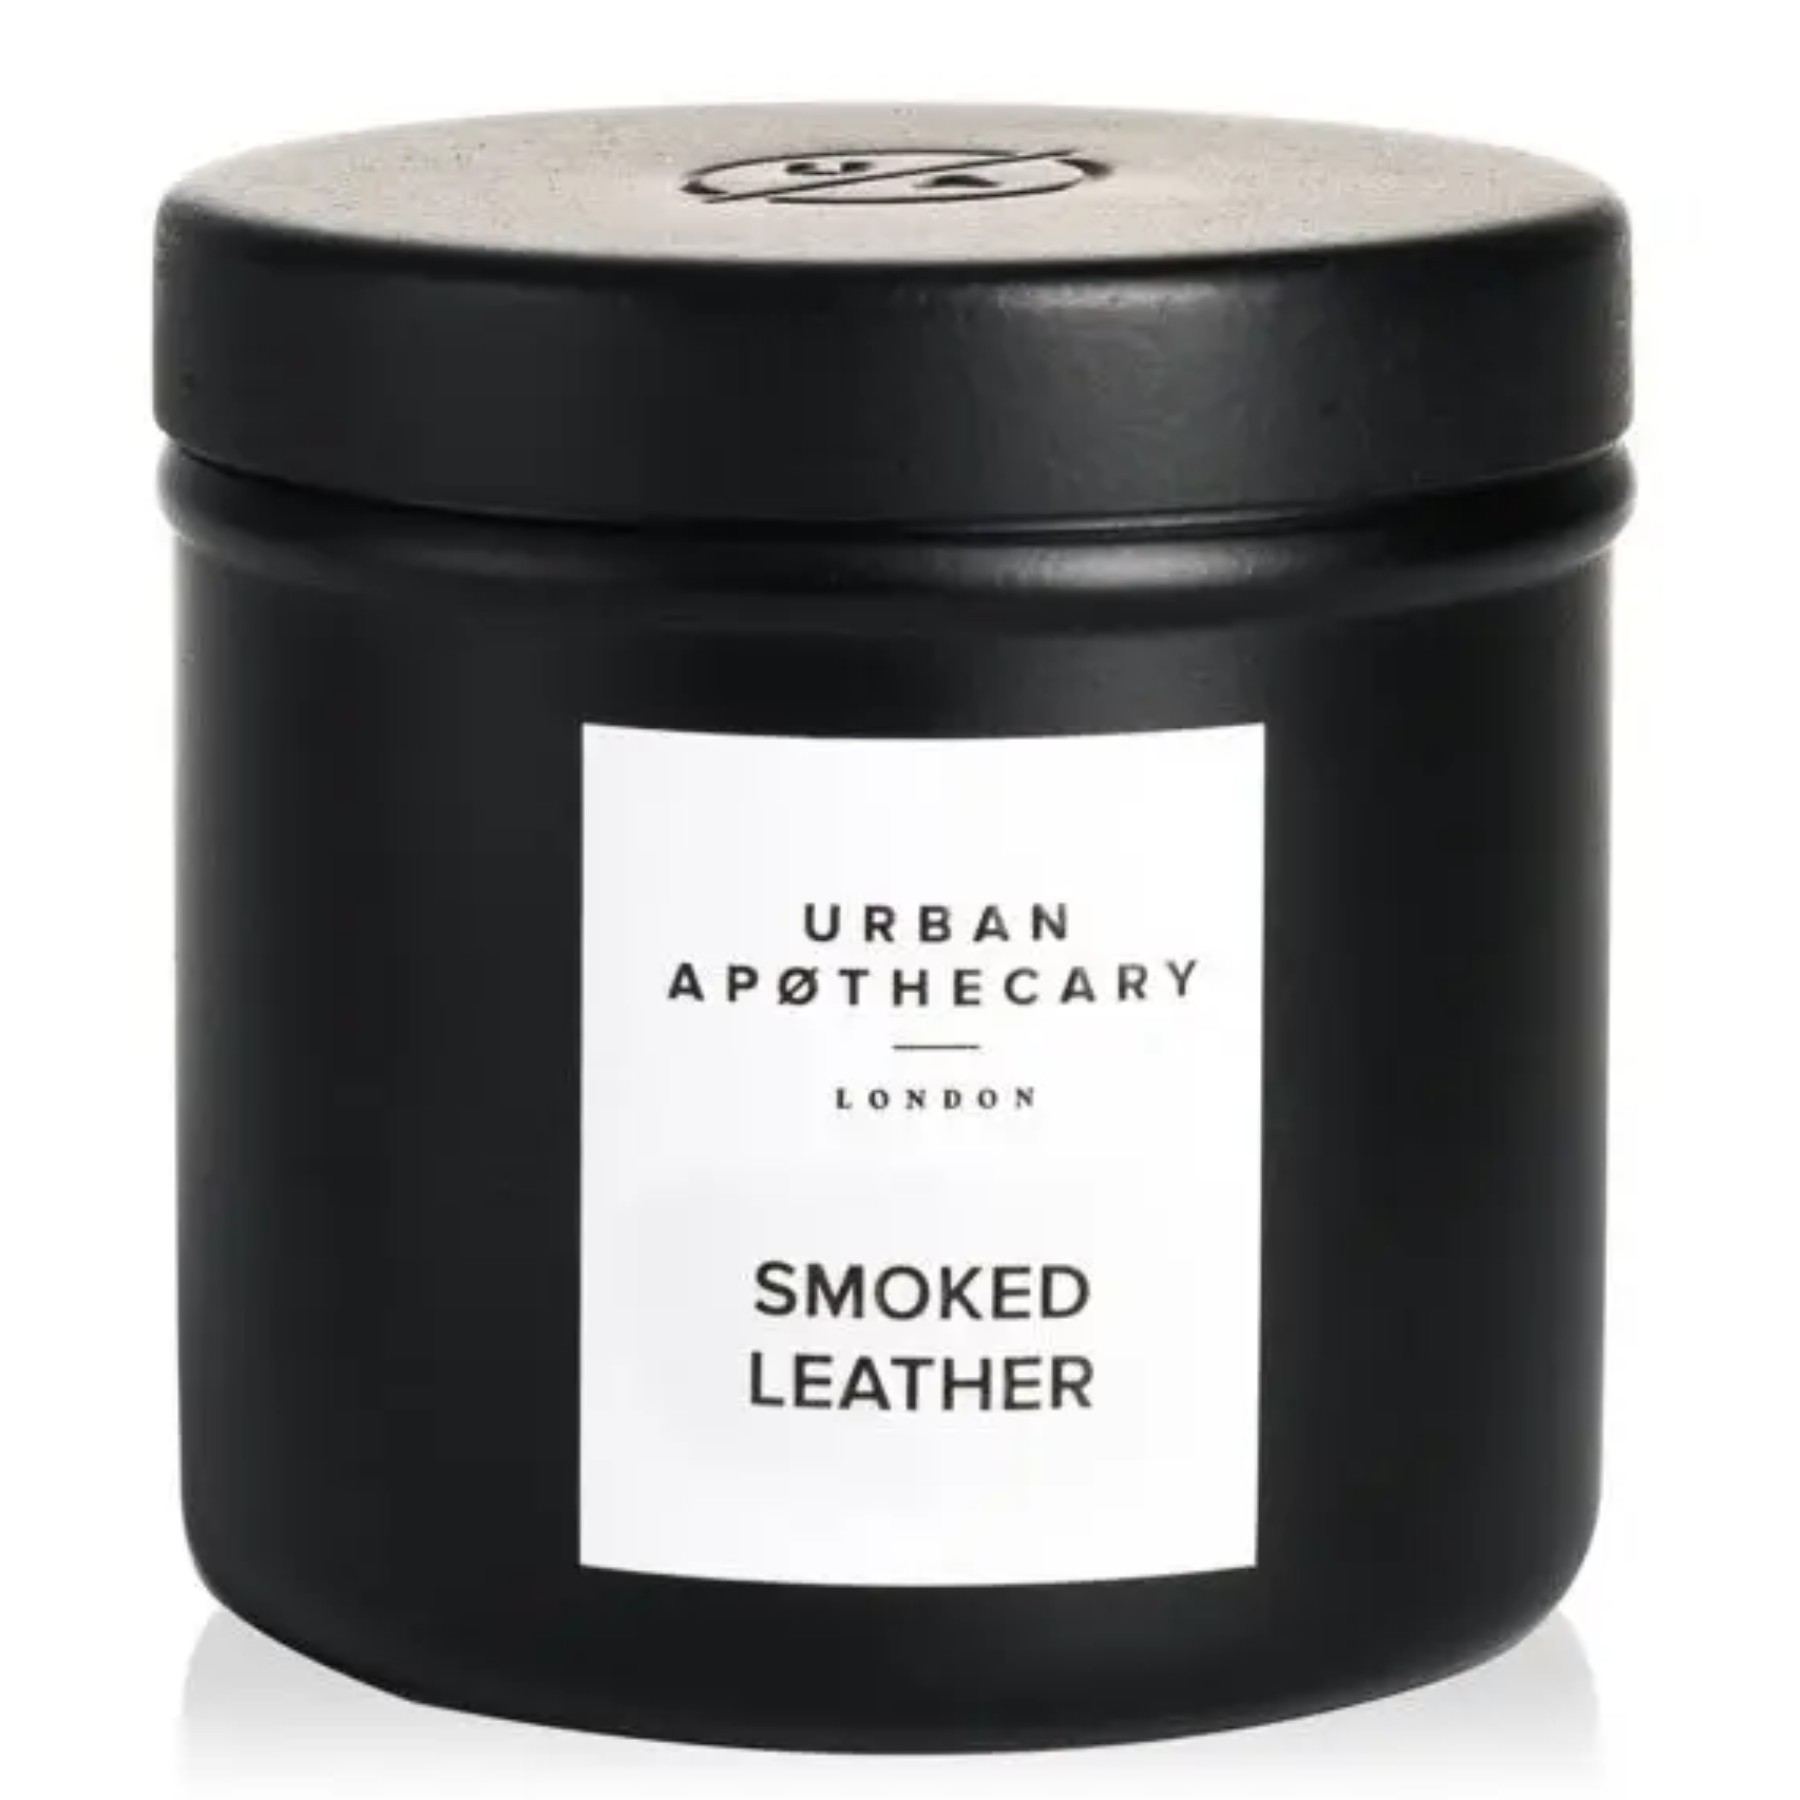 Ароматическая свеча с ароматом кожи и дровяного дыма Urban apothecary Smoked Leather, 175г